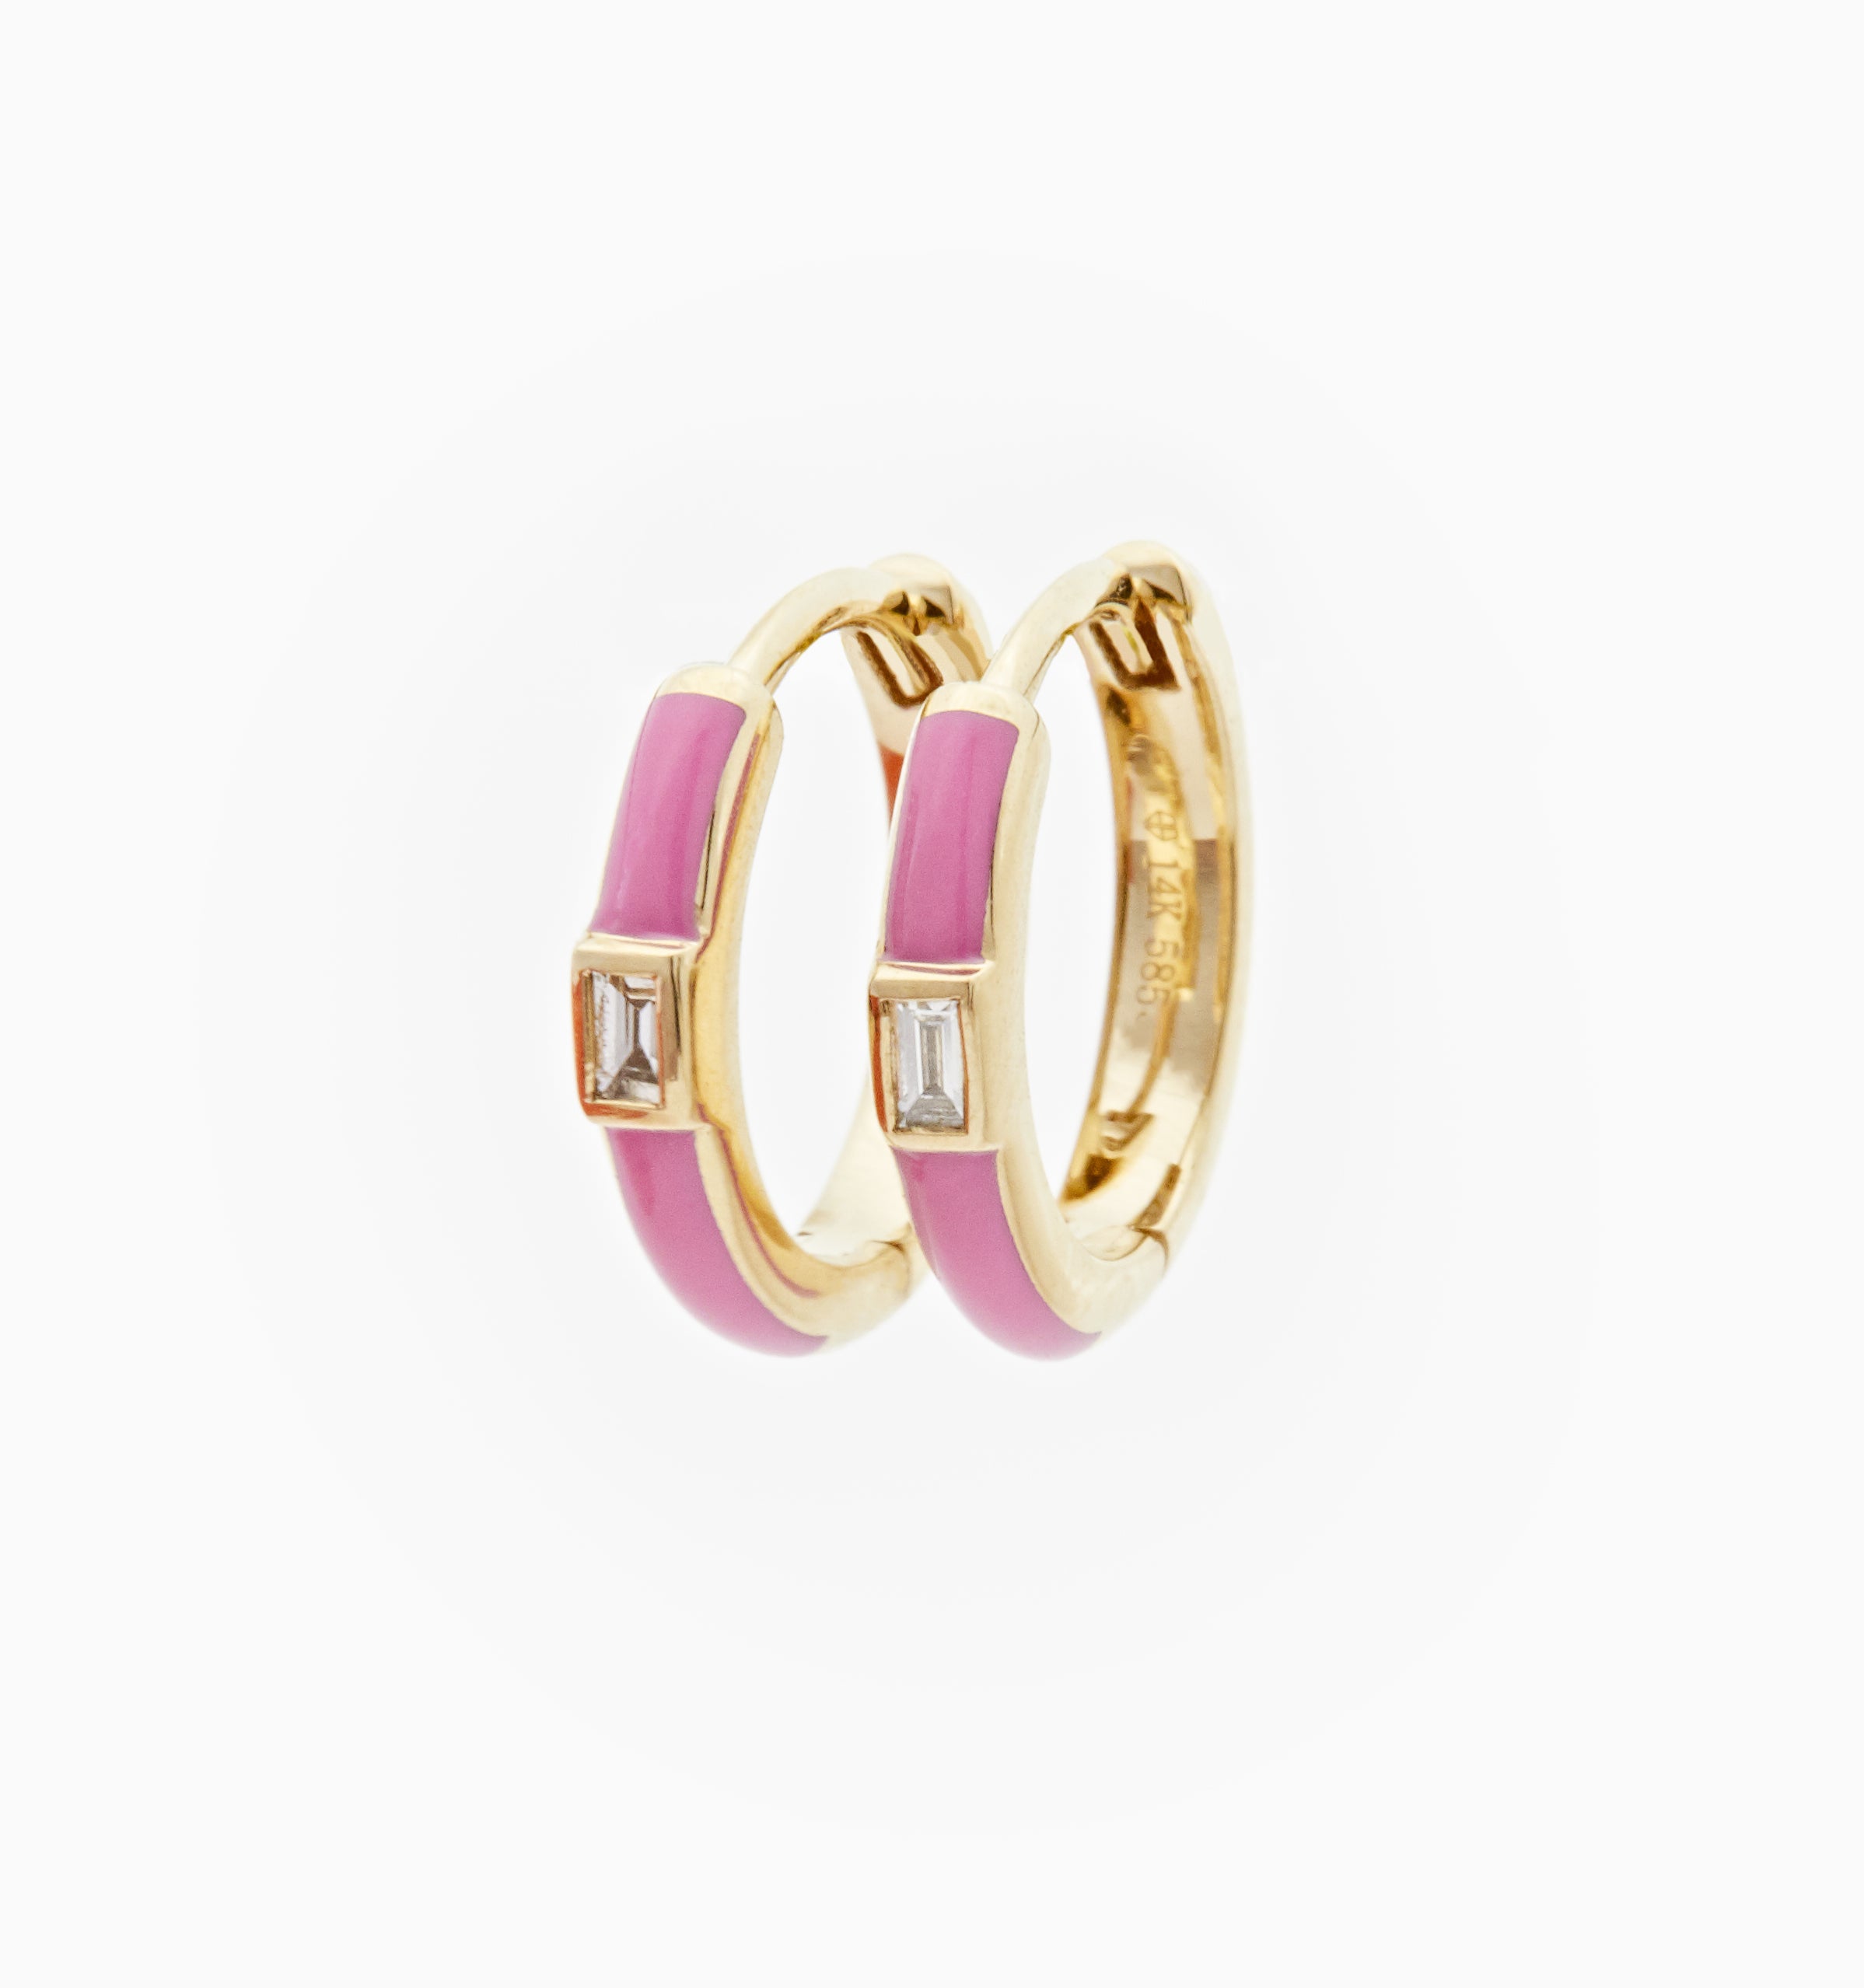 14K Pink Enamel Earrings With Diamonds